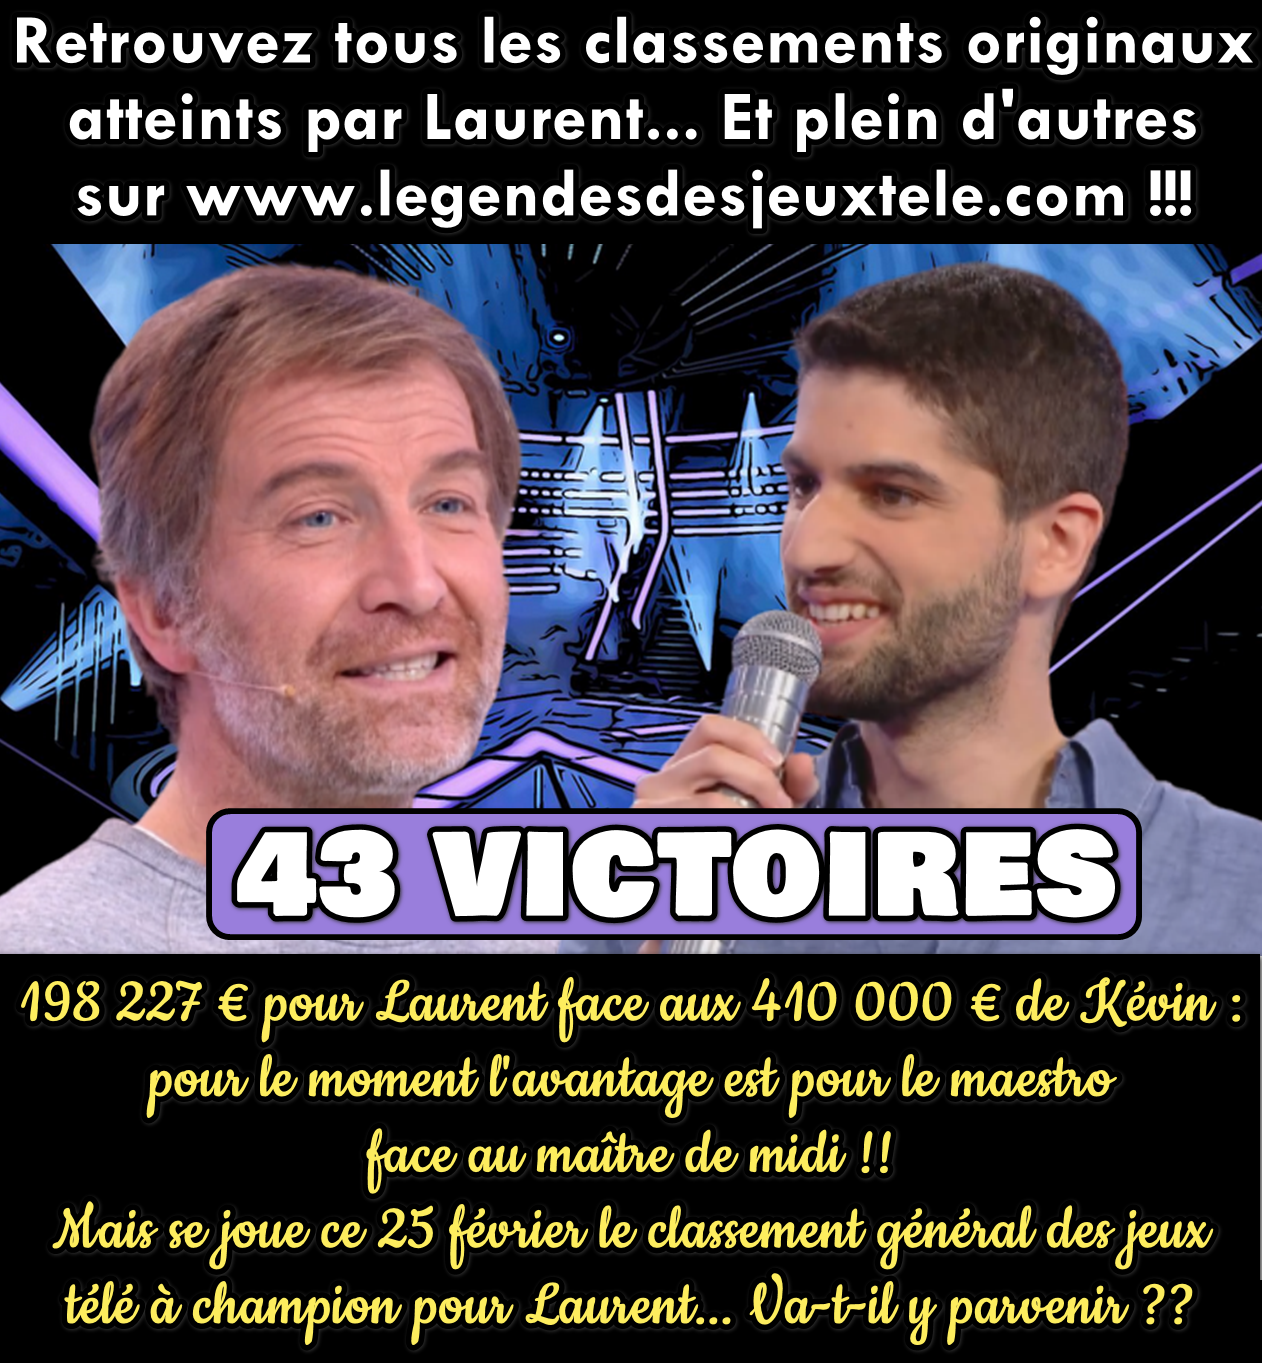 Laurent va-t-il ce vendredi intégrer le classement de tous les champions de jeux TV ?